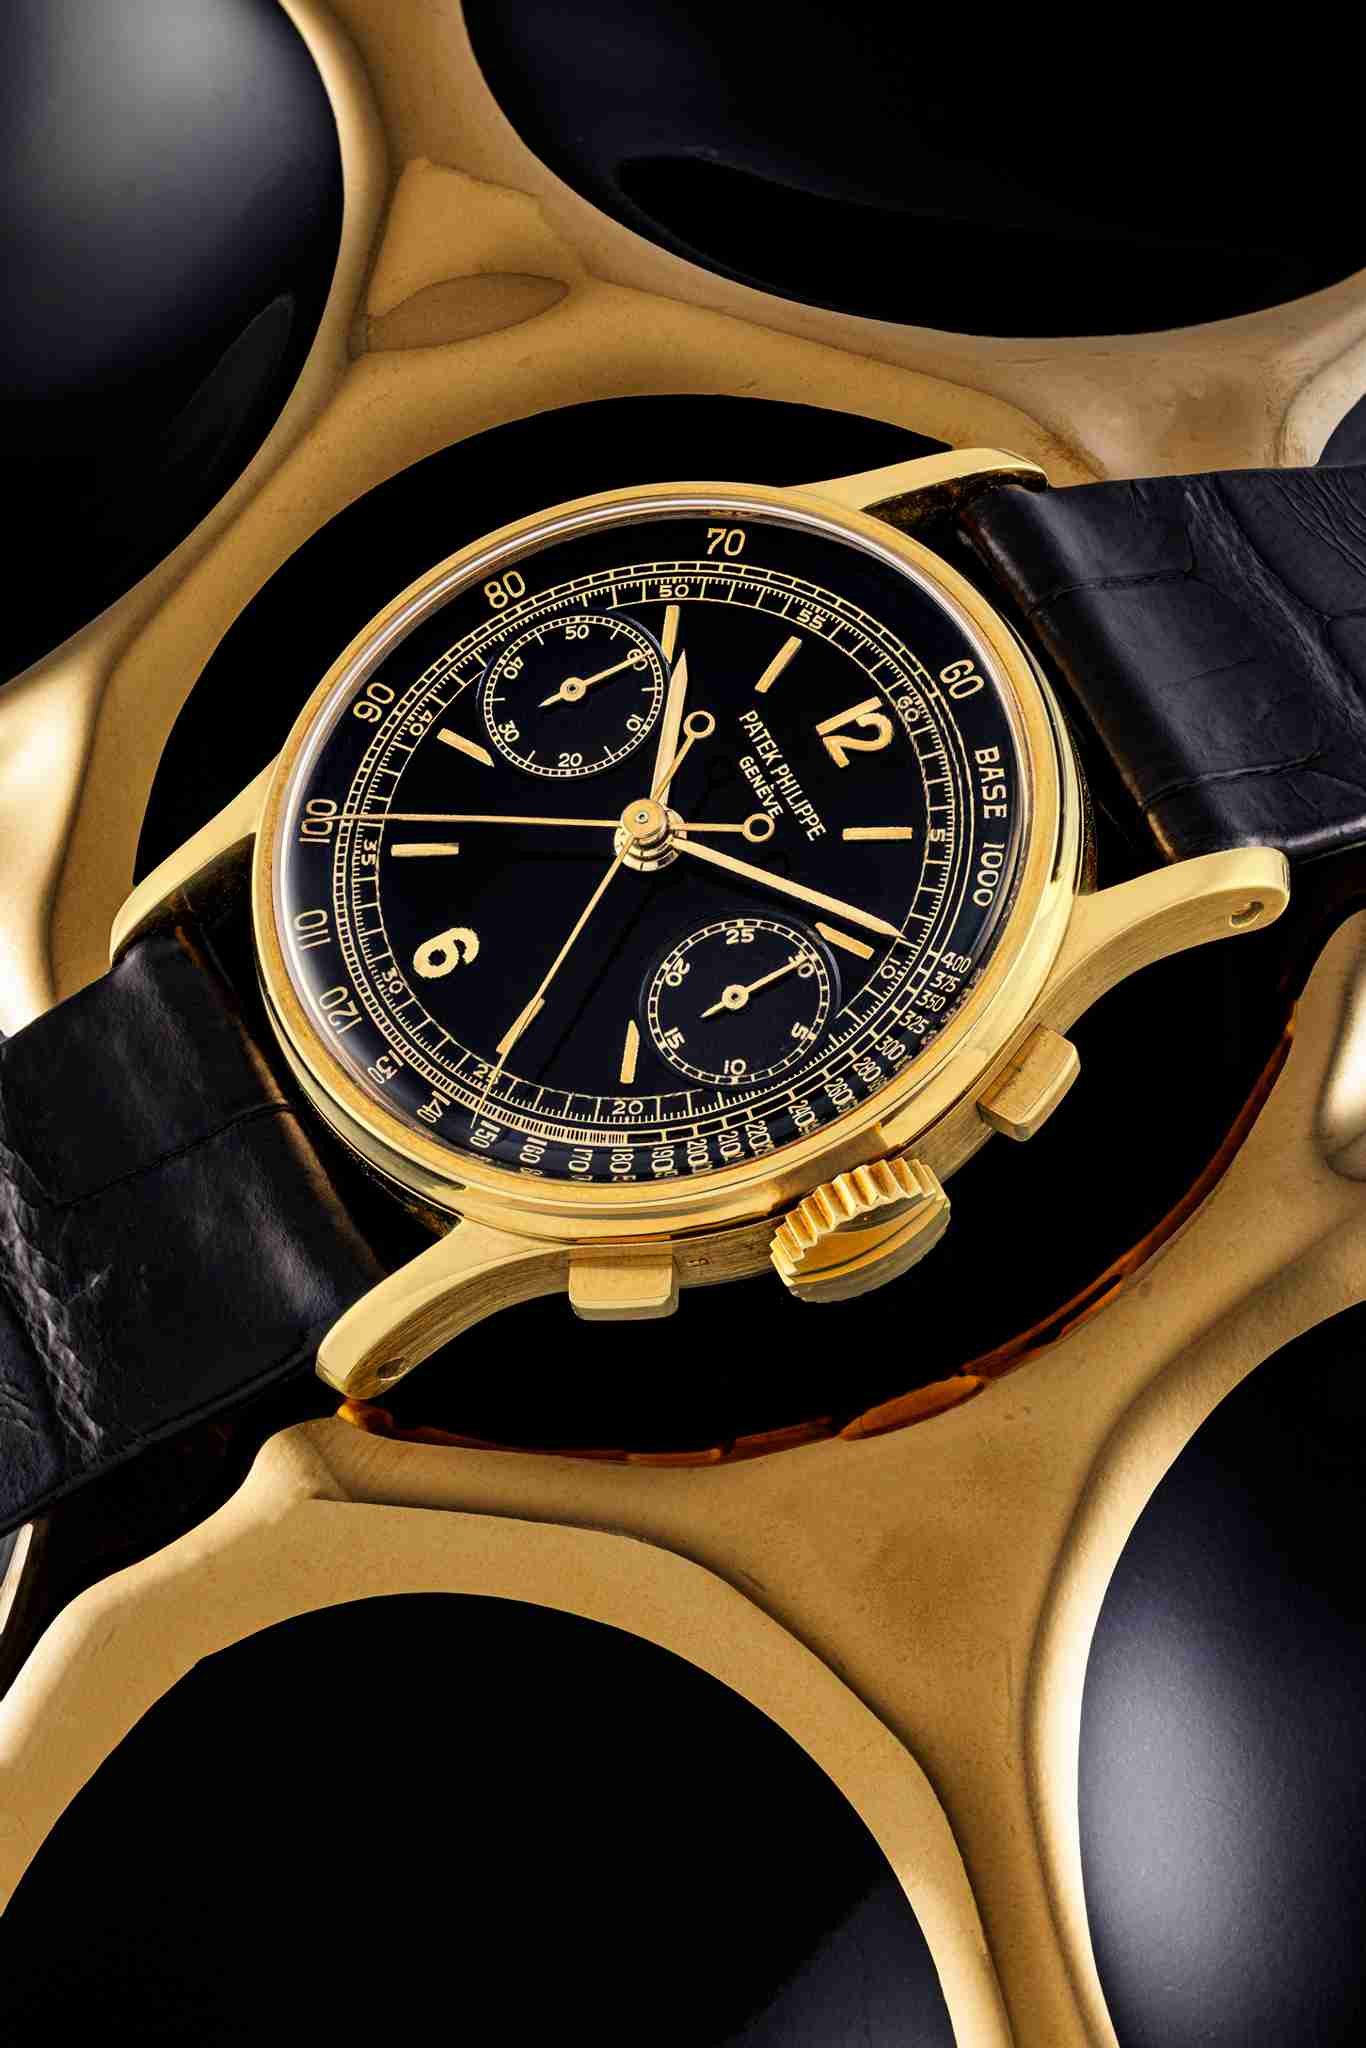 (Patek Philippe, arloji kronograf split seconds dari emas 18 karat yang menarik dan langka dengan dial berwarna hitam. Ref. 1436, dibuat pada 1950. (Perkiraan: HK$4,000,000 — atau sekitar Rp8,000,000). Foto: Dok. Christie’s)